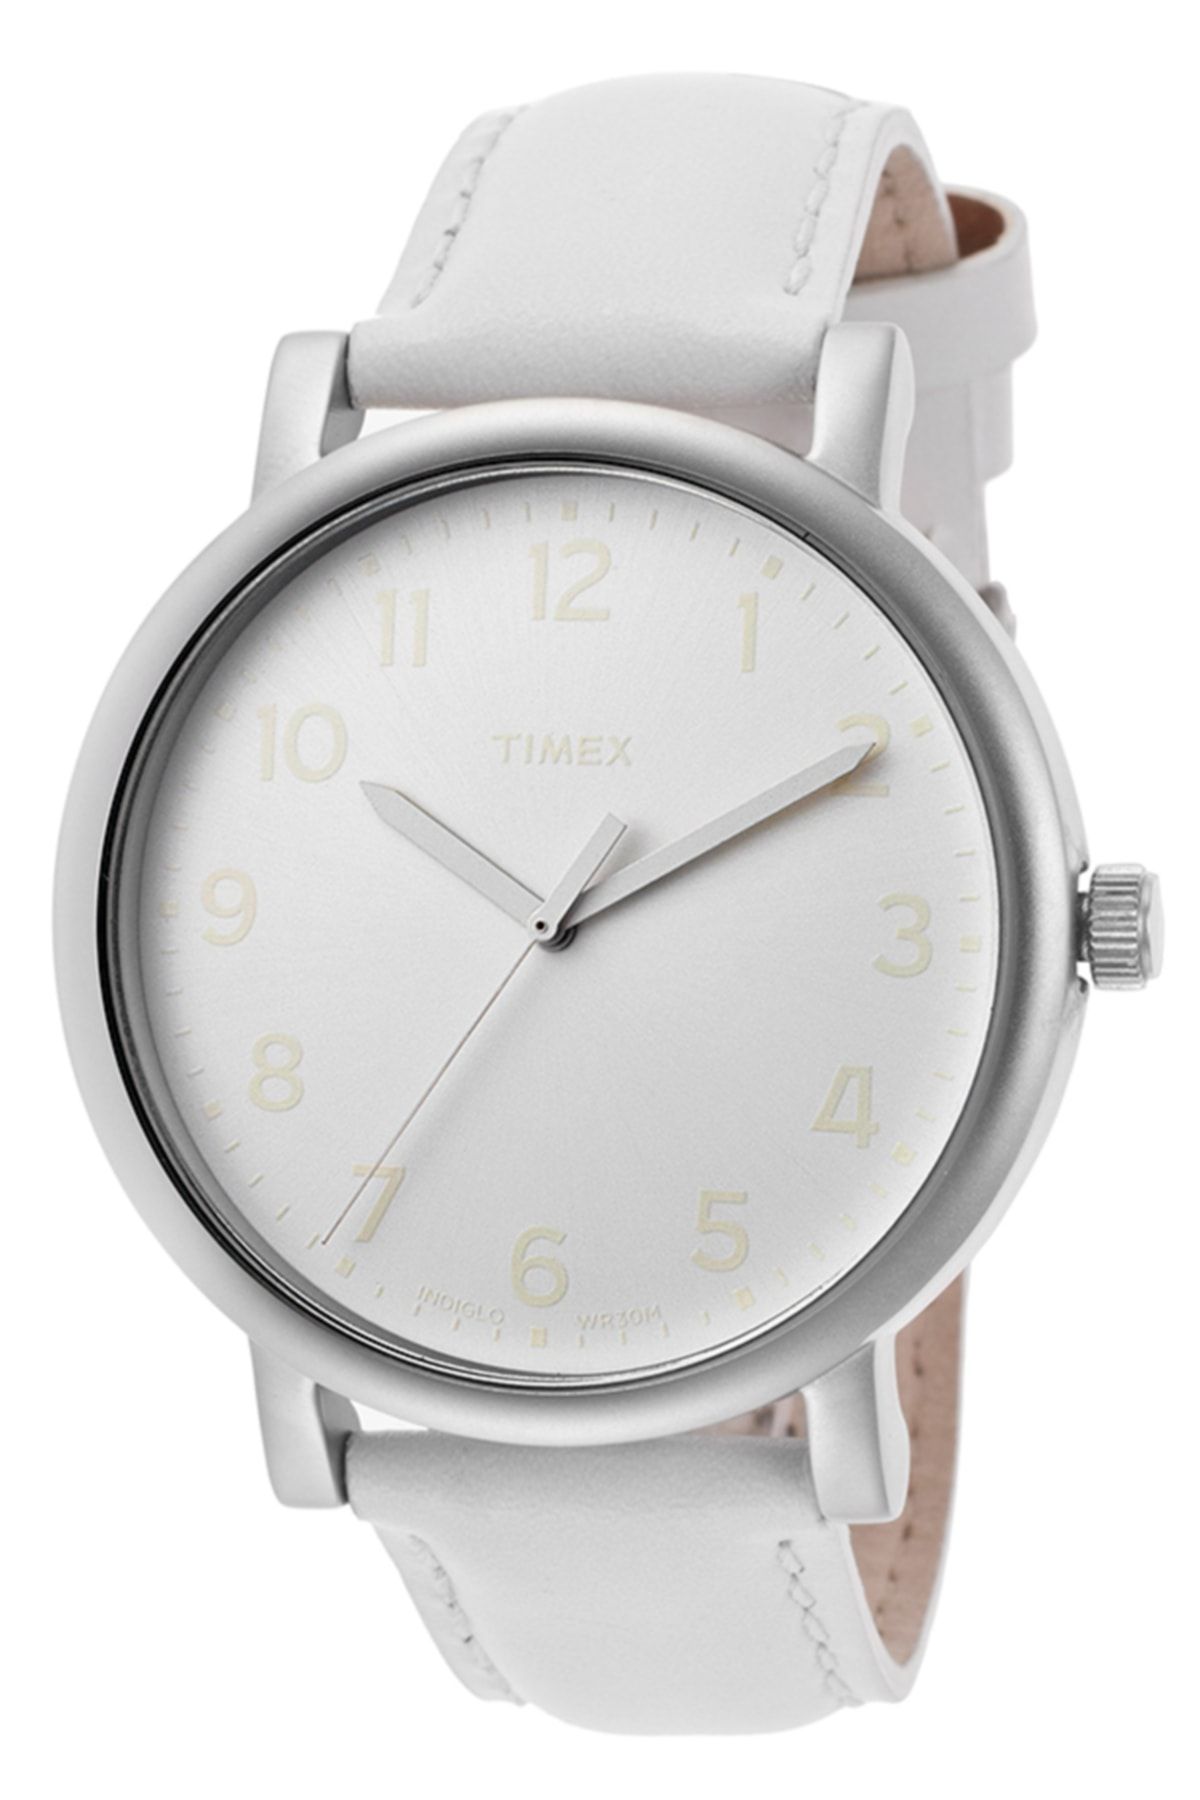 Timex T2n345 Beyaz Unisex Kol Saati